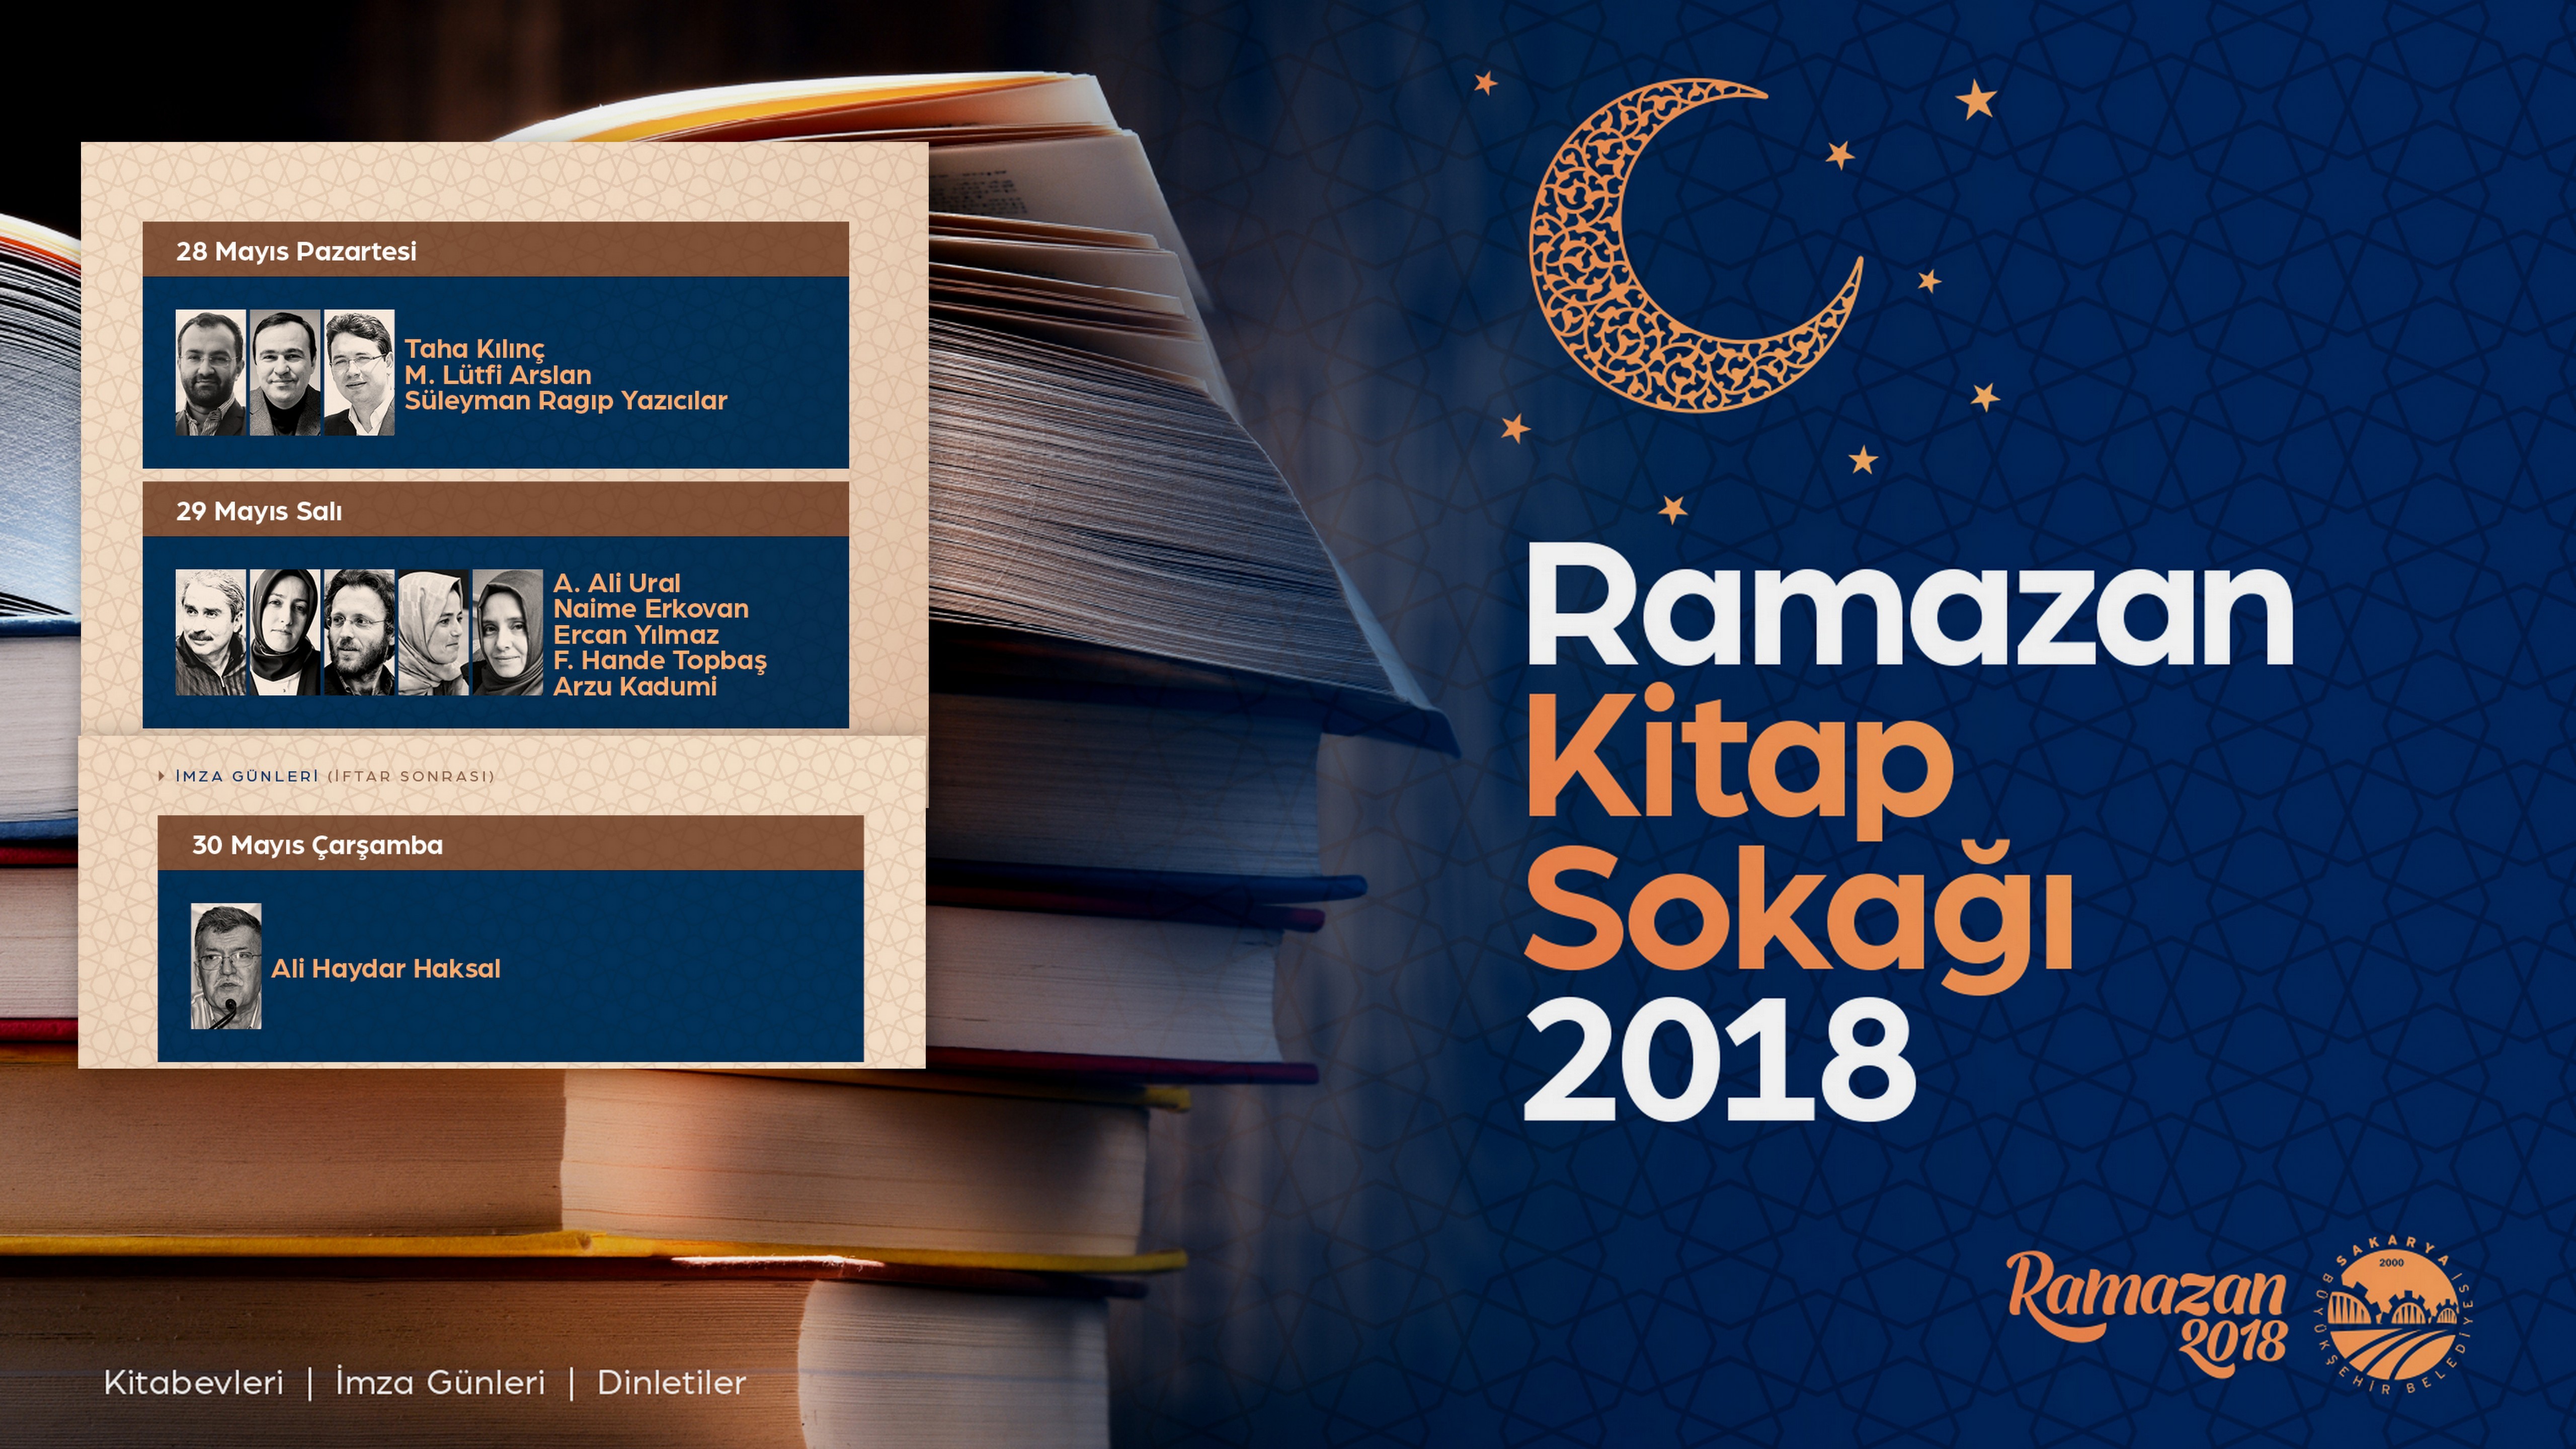 Ramazan Kitap Sokağı’nda yeni hafta